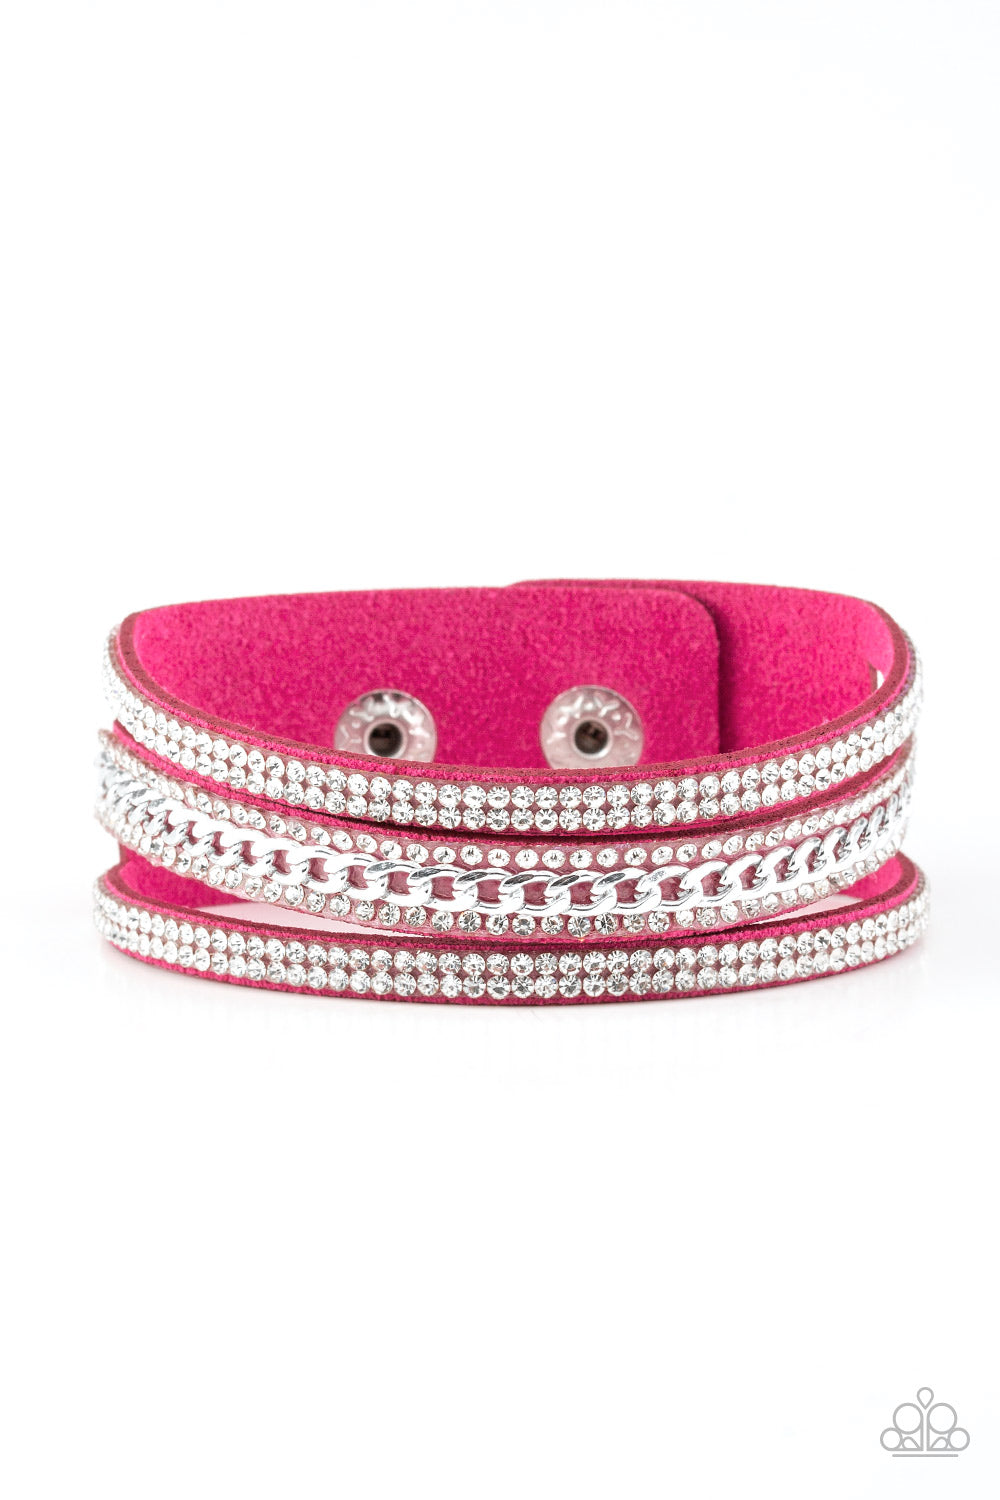 Paparazzi Rollin in Rhinestones - Pink Wrap Bracelet